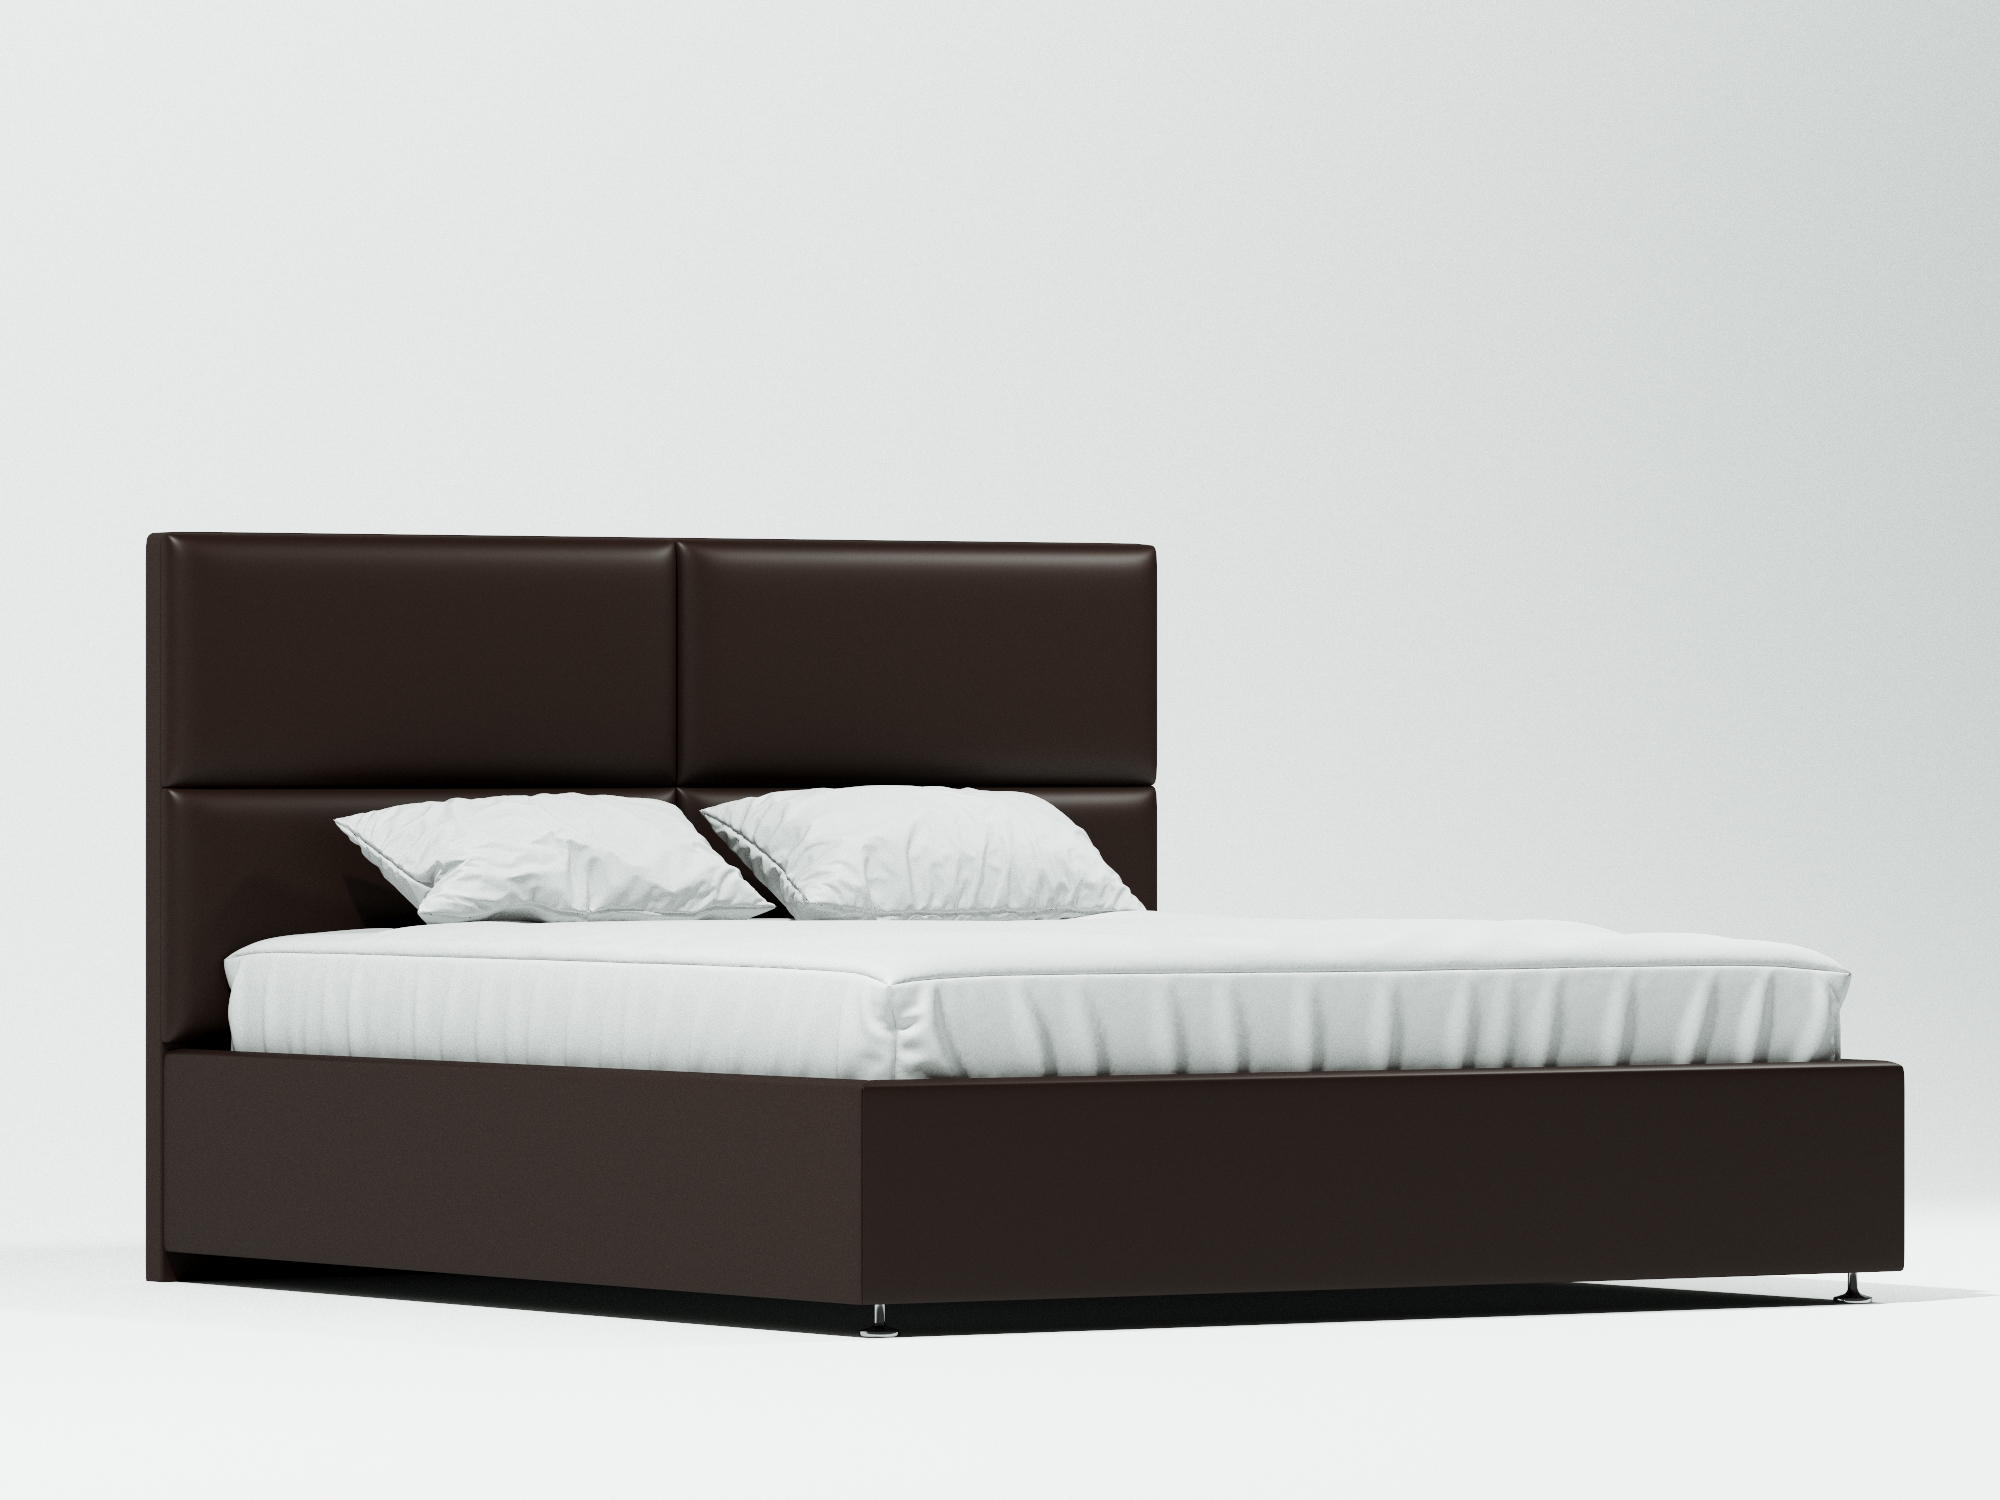 Кровать Примо Плюс (160х200) Венге, ДСП, МДФ кровать николь 160х200 бетон графит бежевый коричневый темный мдф лдсп